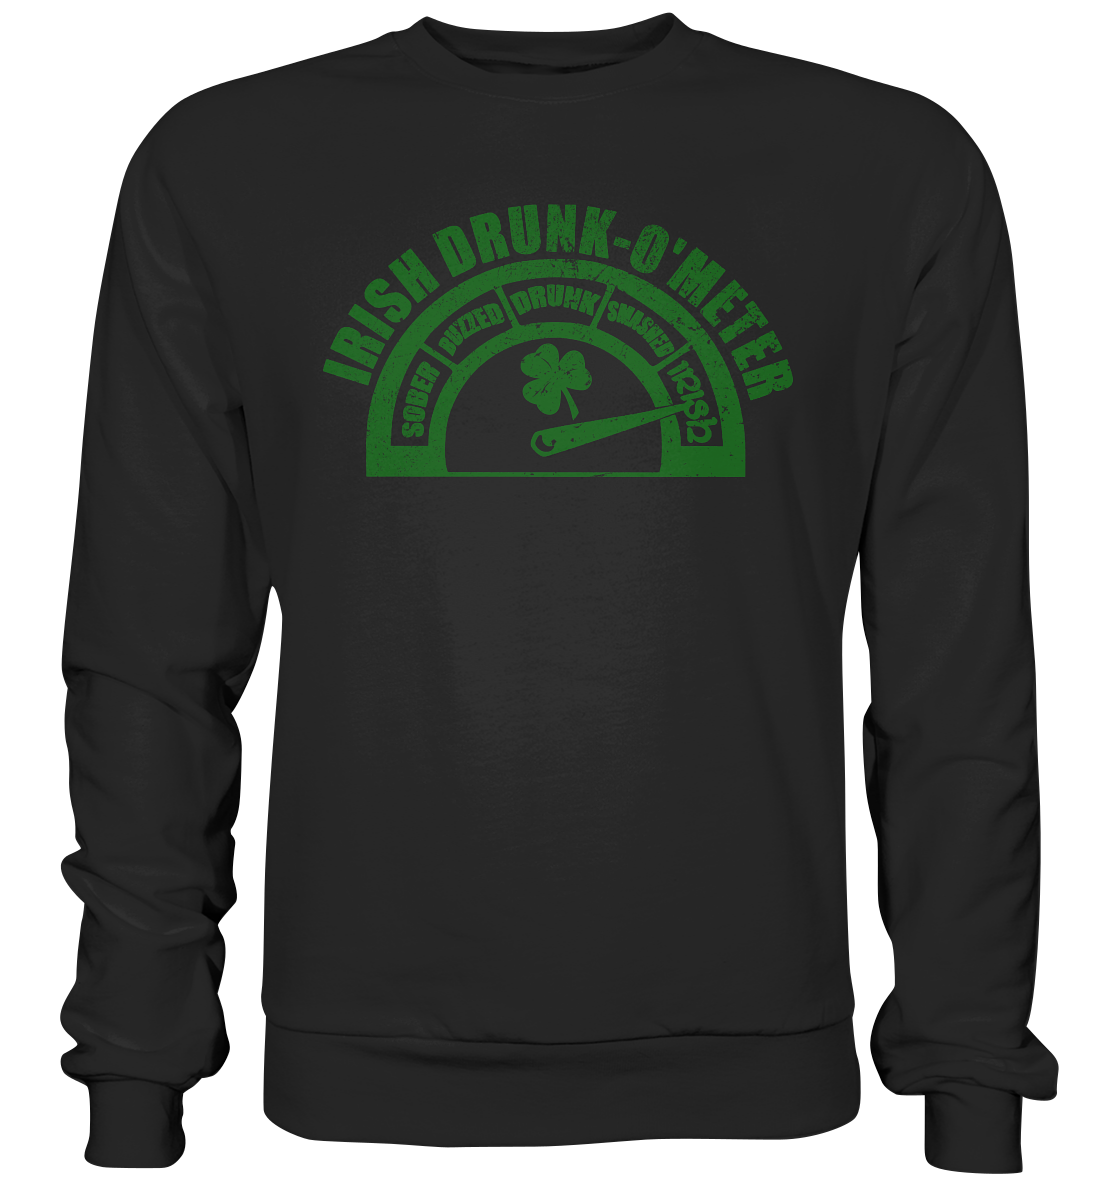 "Irish Drunk-O'Meter" - Premium Sweatshirt